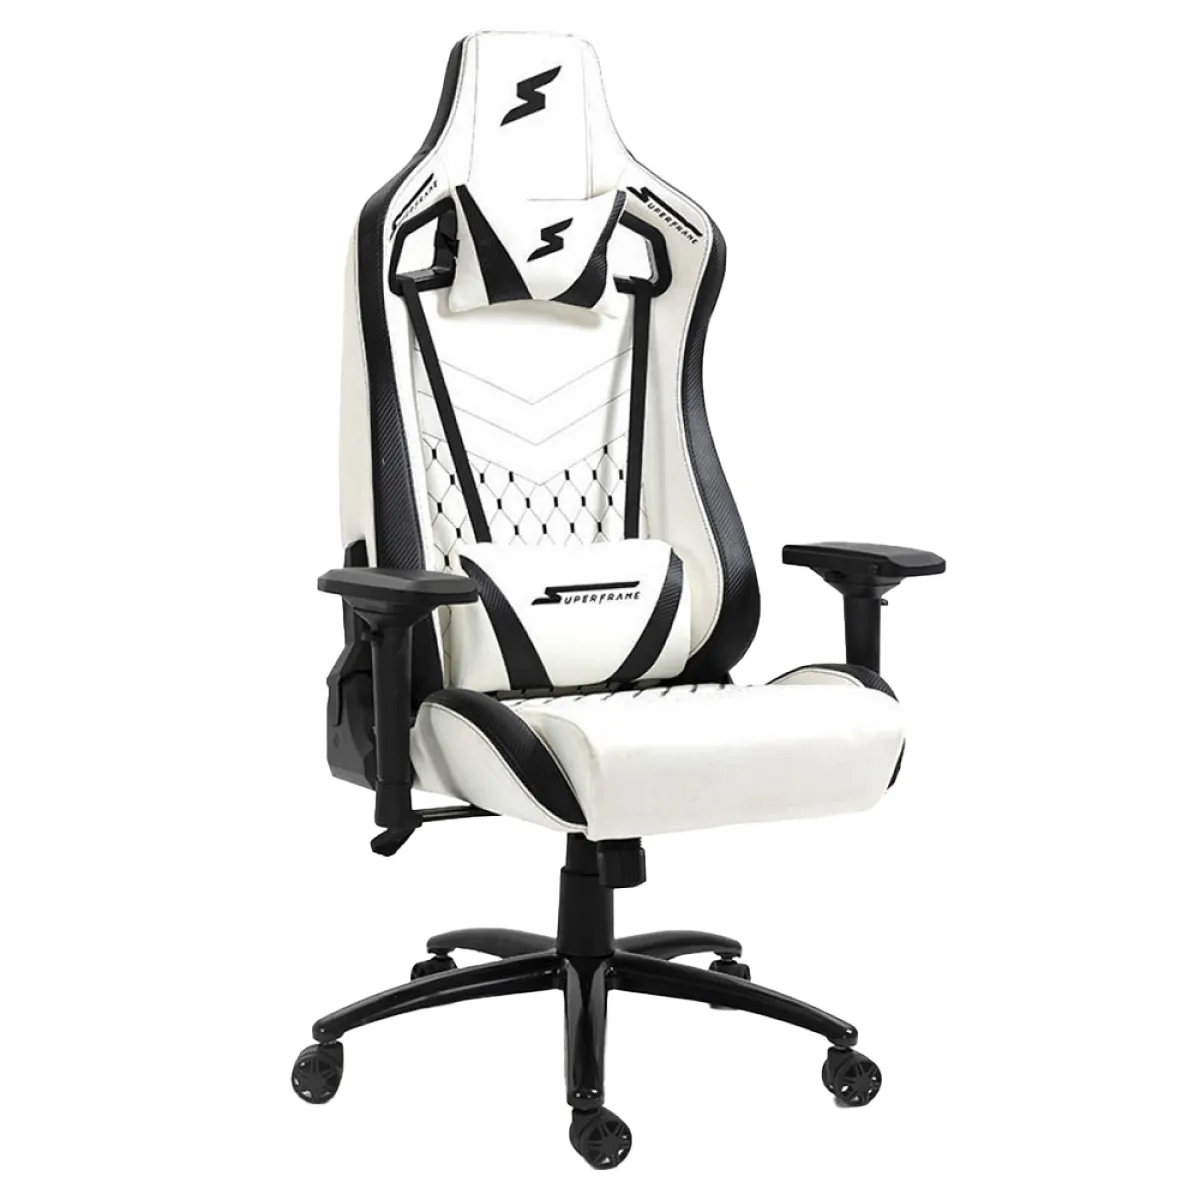 Cadeira Gamer Superframe Cleric, Reclinvel, 4d, Branco E Preto